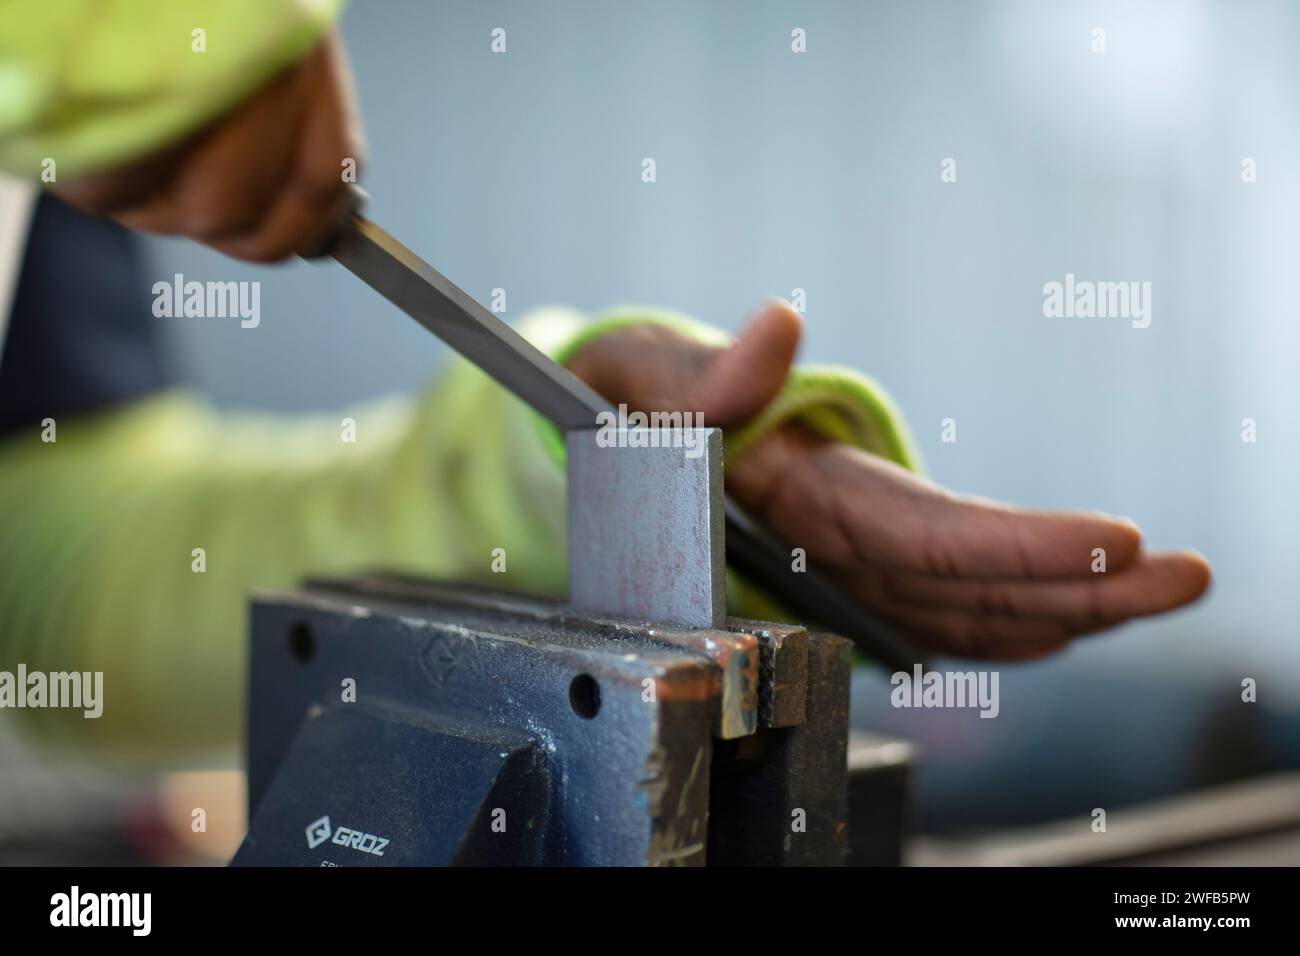 Ein Kaukasier mit grüner Jacke und Schutzbrille benutzt ein elektrisches Werkzeug für ein Holzbearbeitungsprojekt Stockfoto